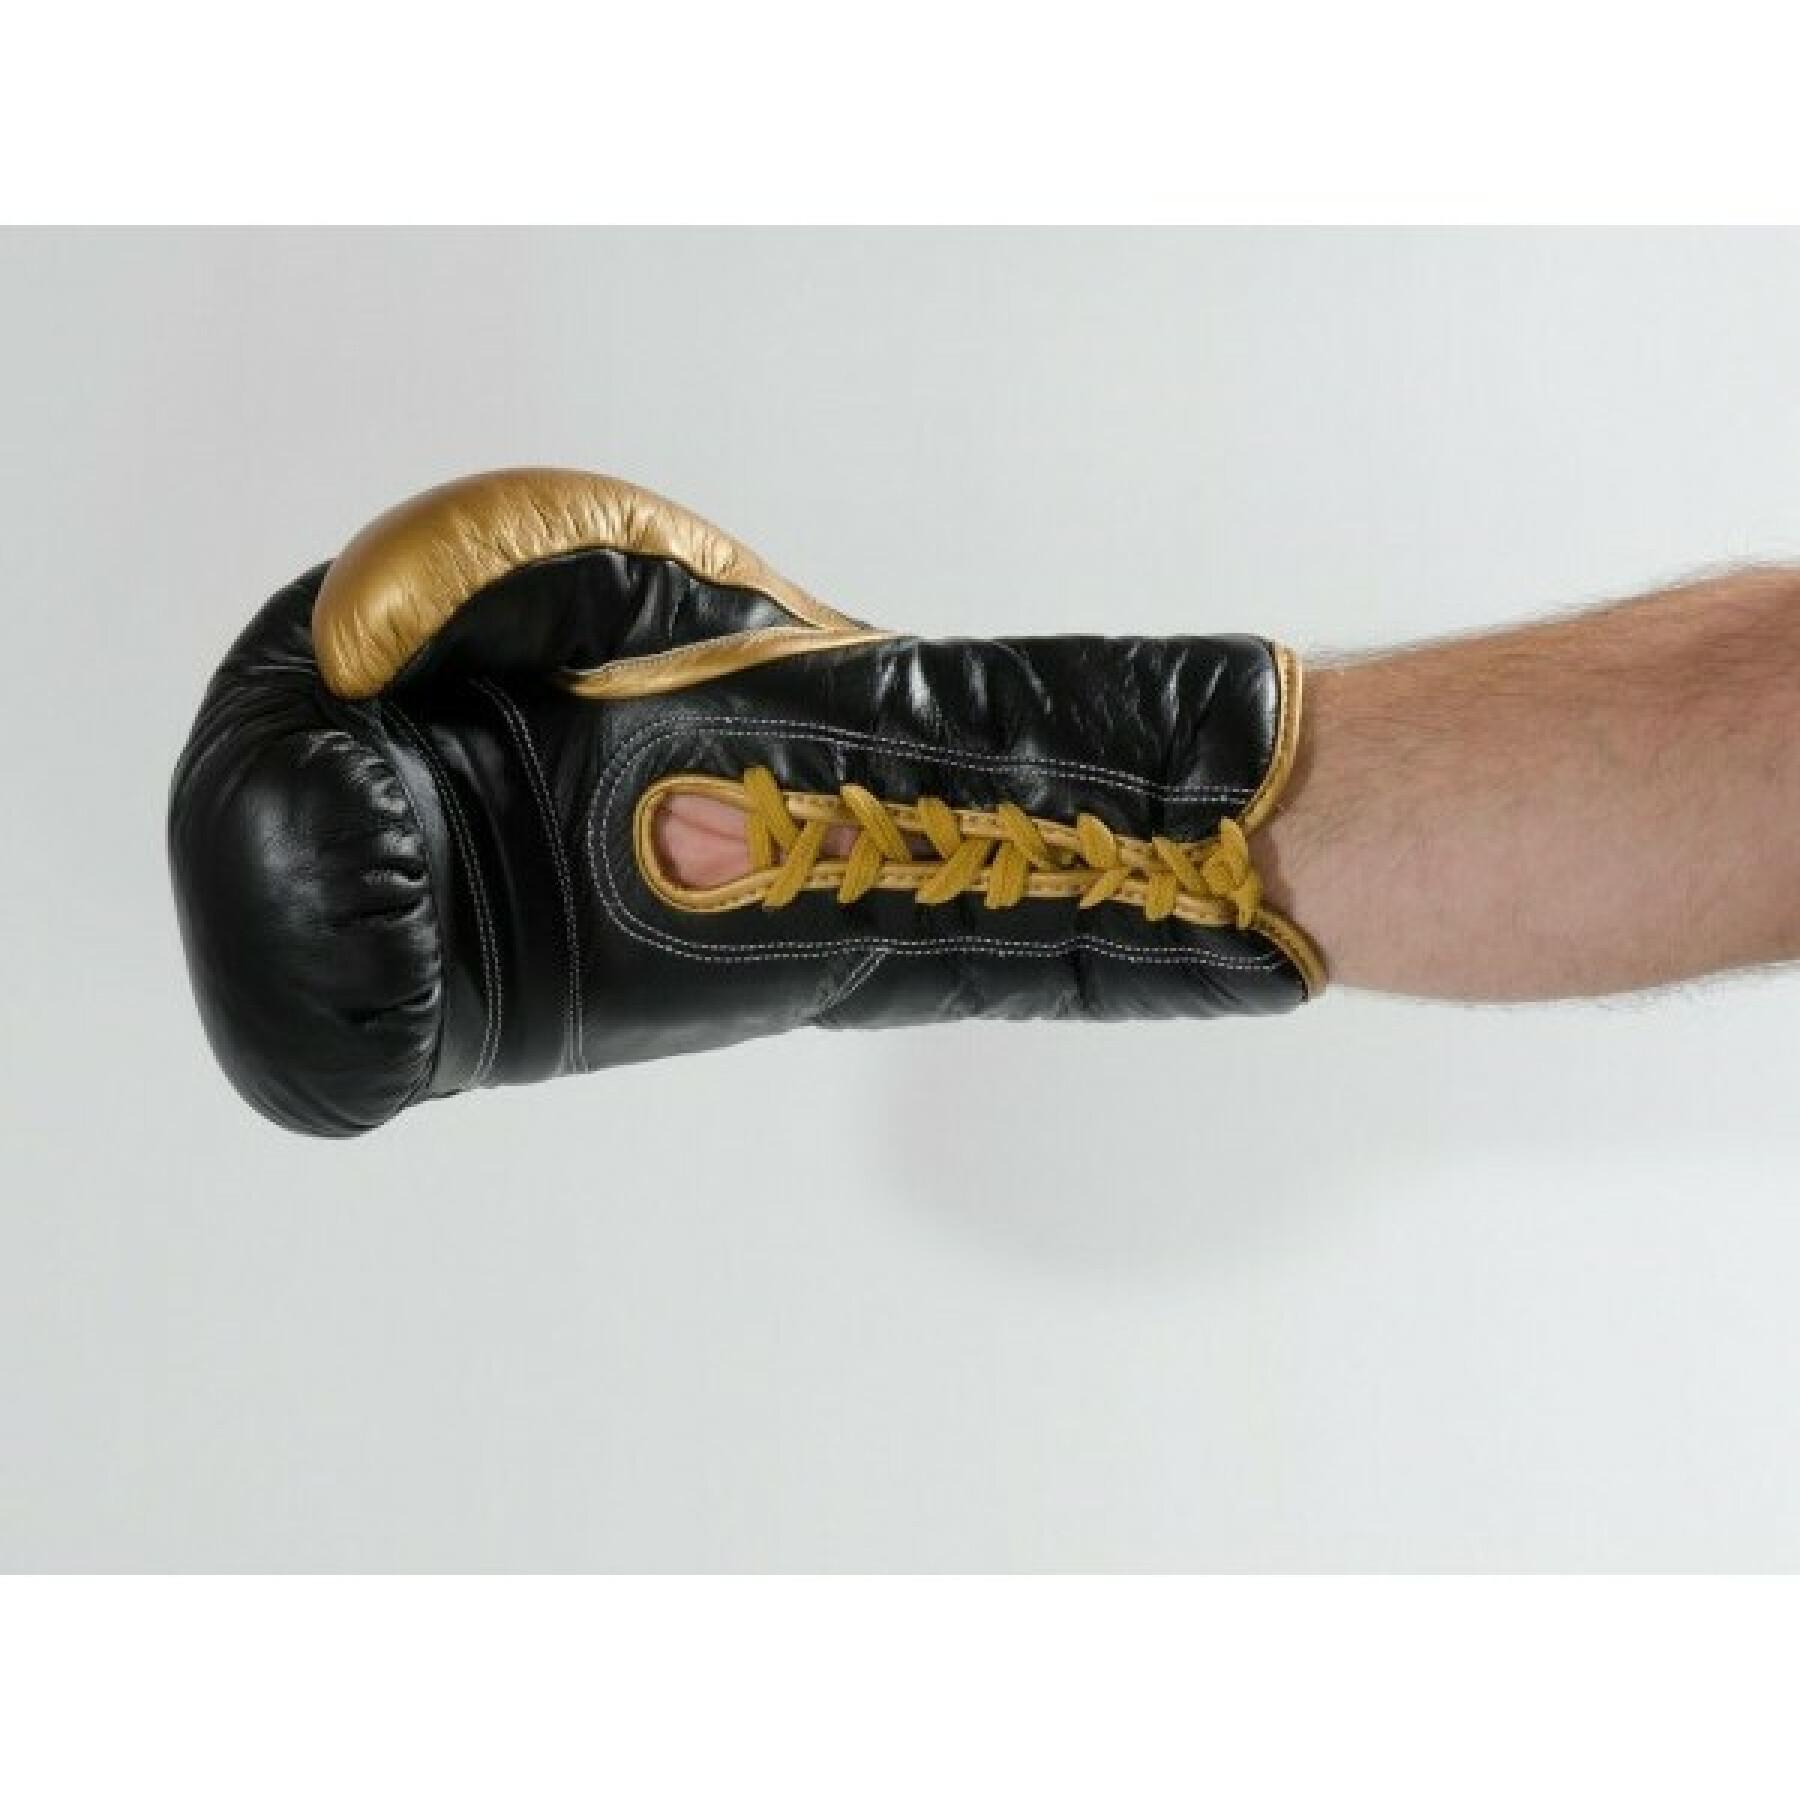 Skórzane rękawice bokserskie ze sznurowadłami Kwon Professional Boxing